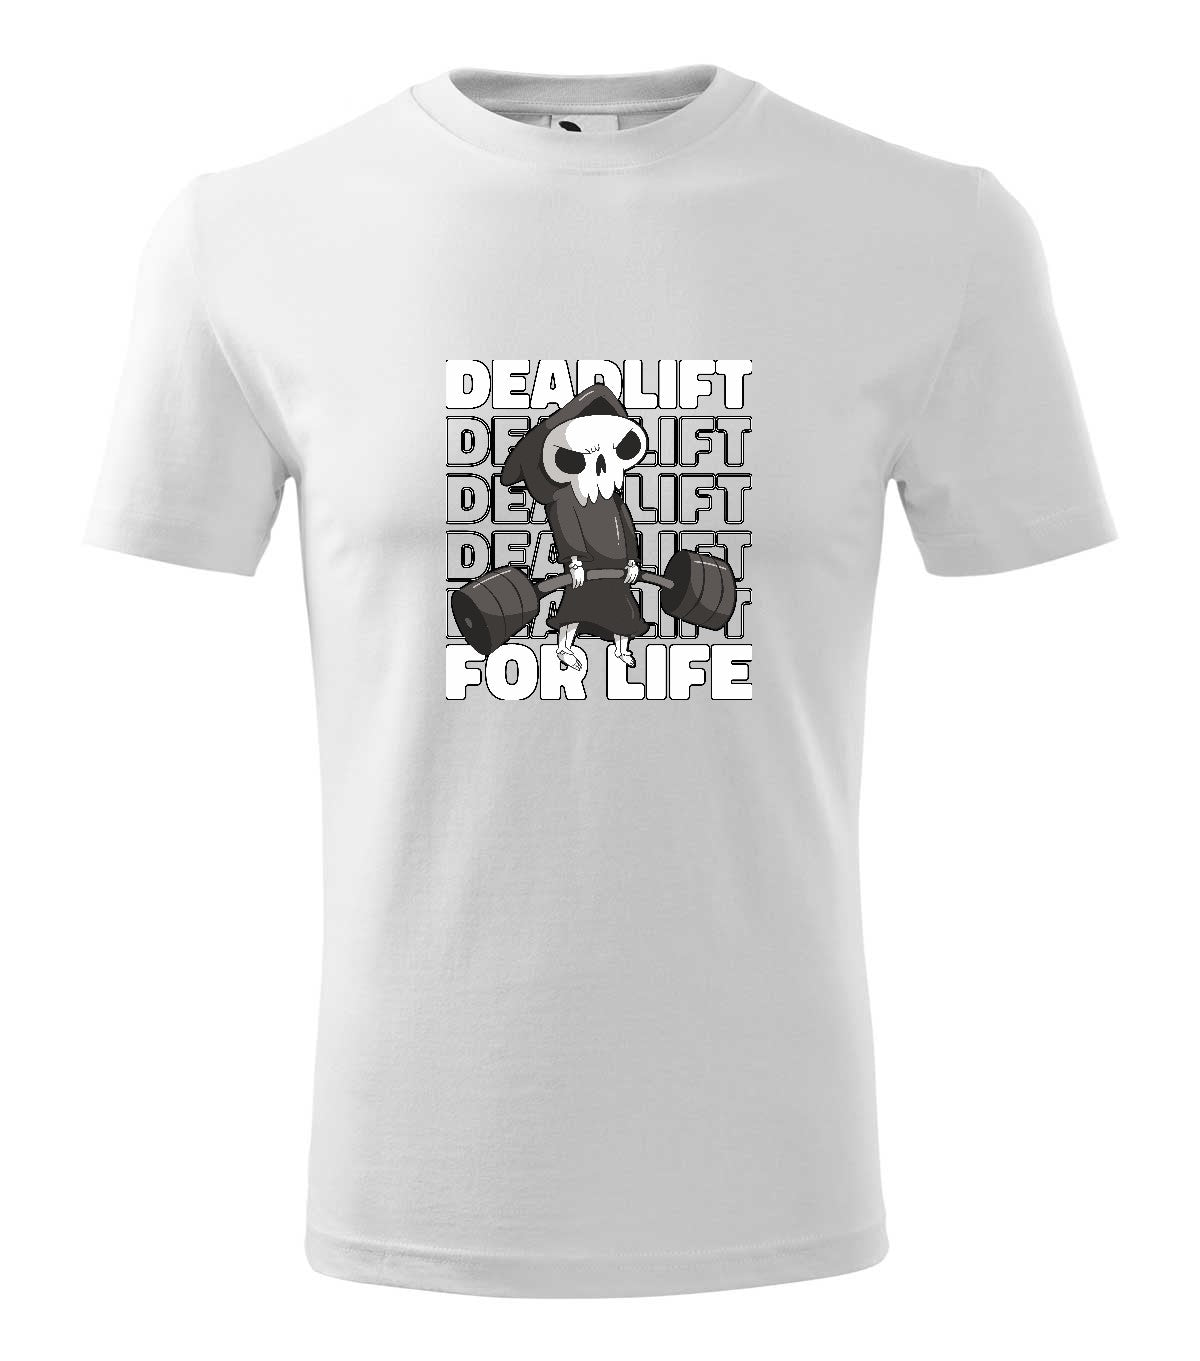 Deadlift férfi póló